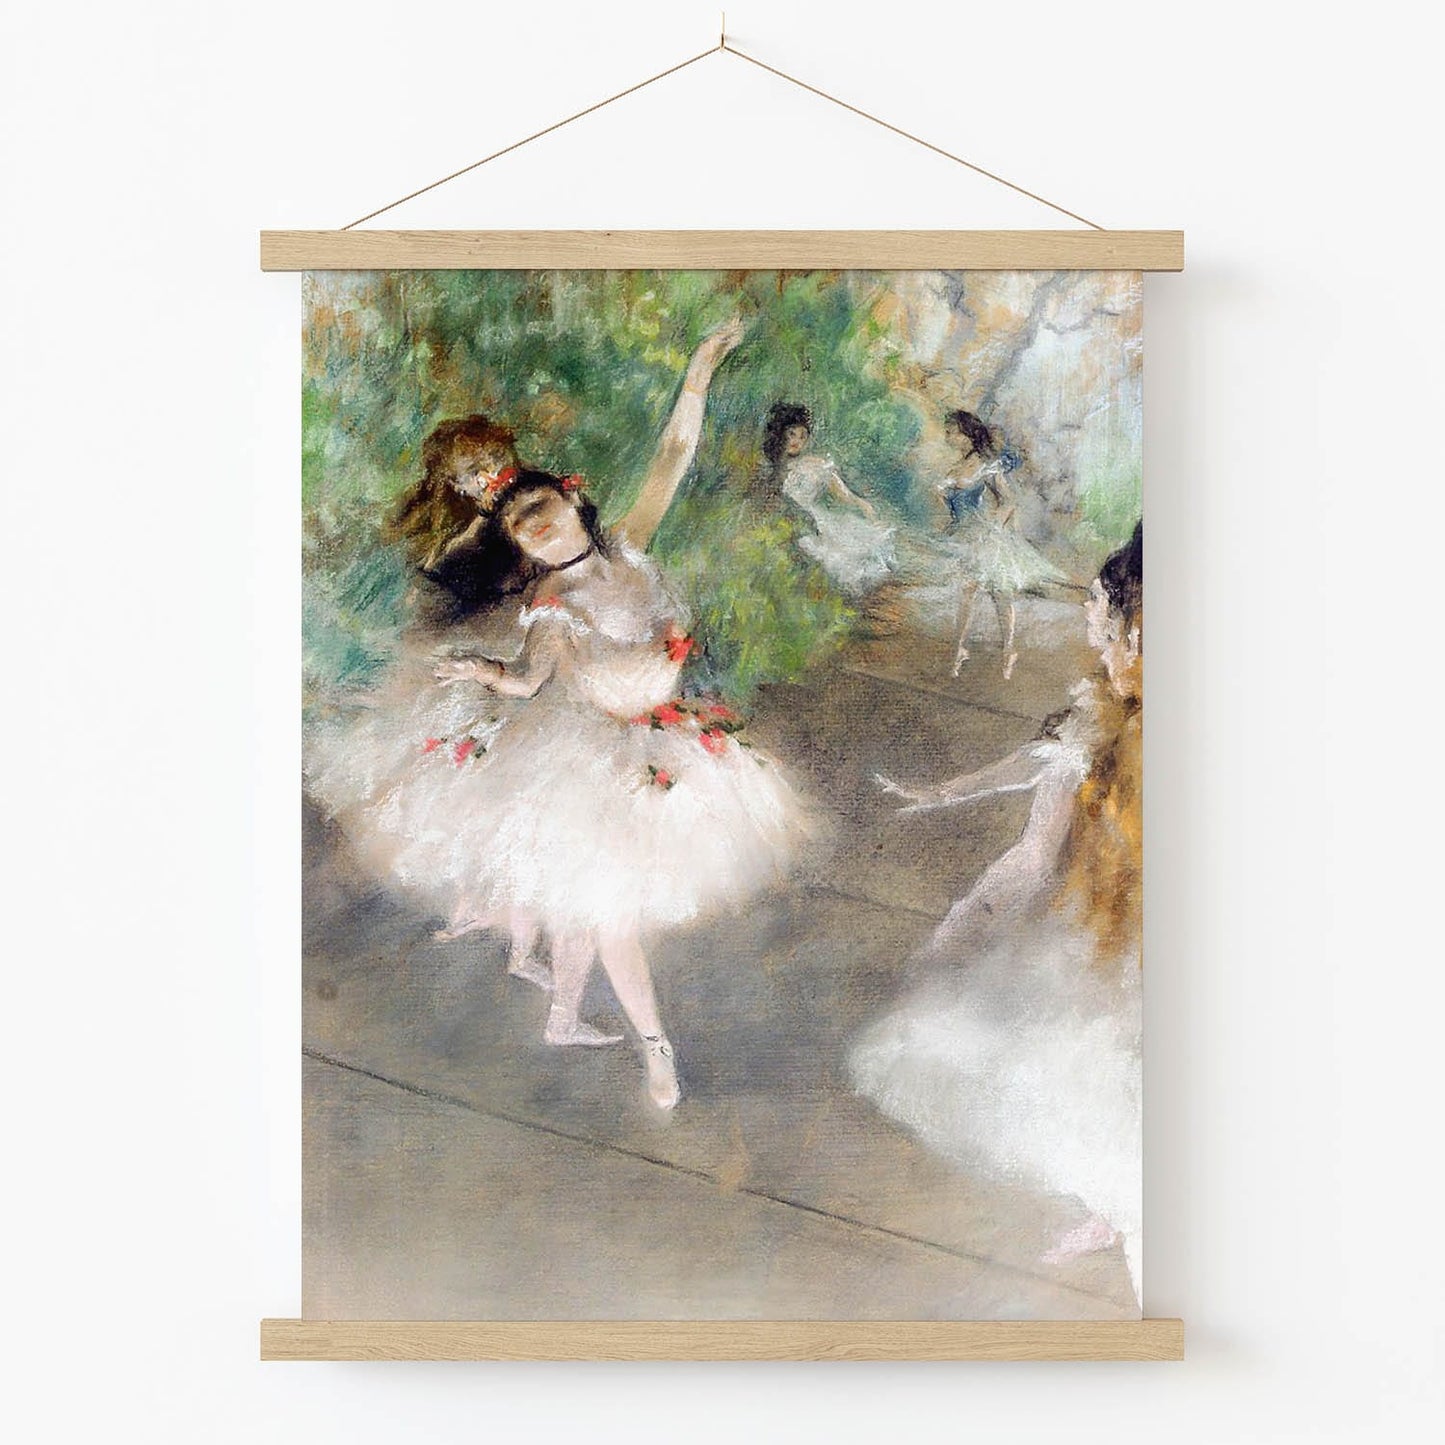 White Dressed Ballerina Art Print in Wood Hanger Frame on Wall